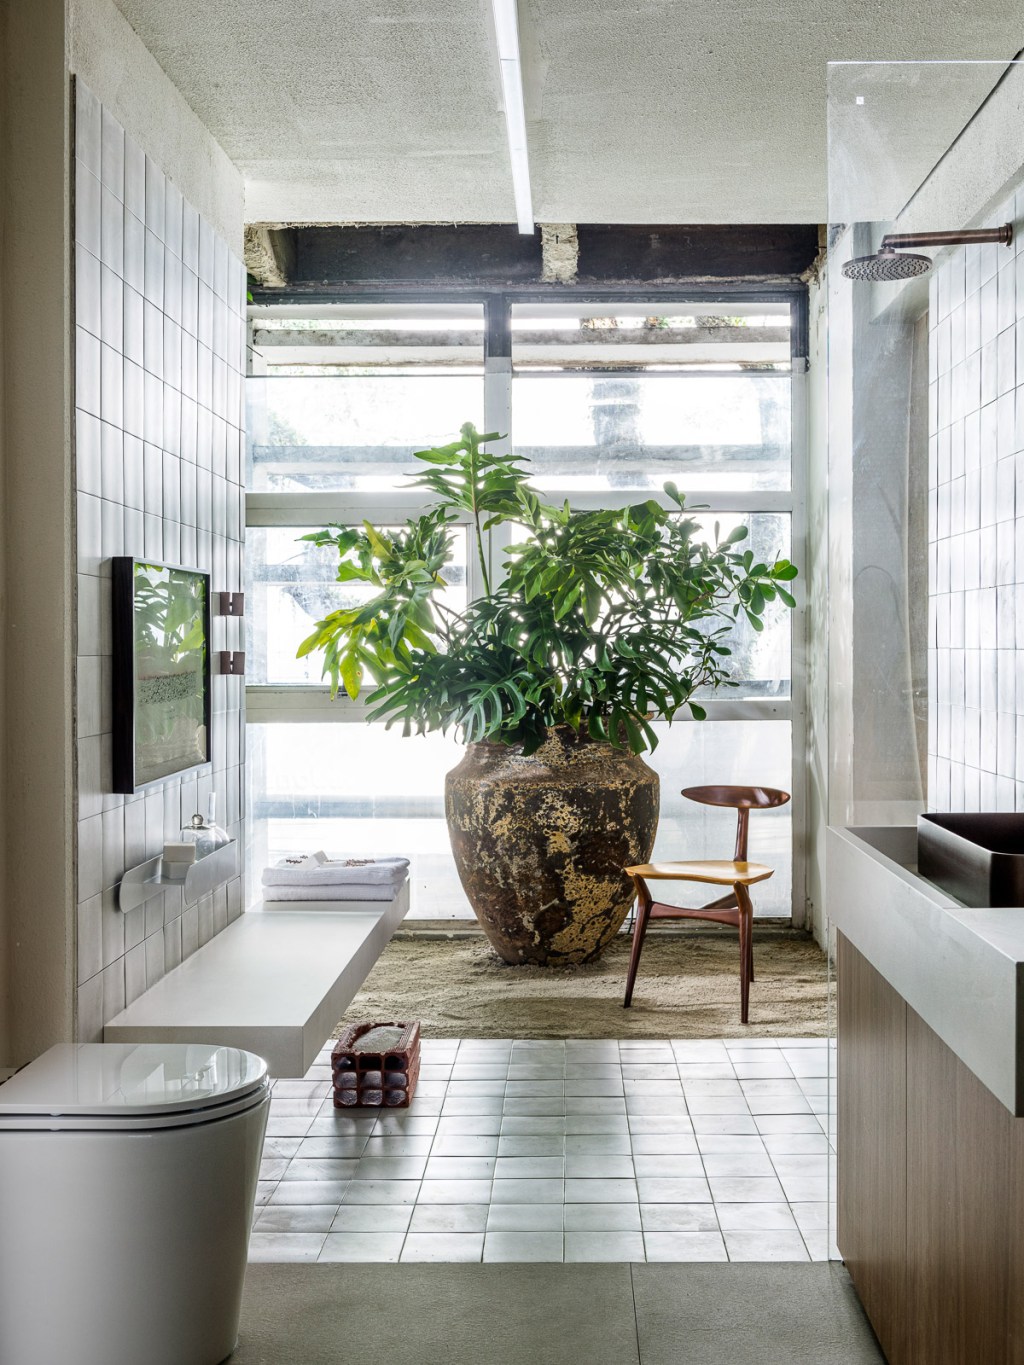 Gustavo Martins Arquitetos - Odoiá. Projeto da CASACOR São Paulo 2023. Na foto, banheiro com parede de madeira, banco e vaso.